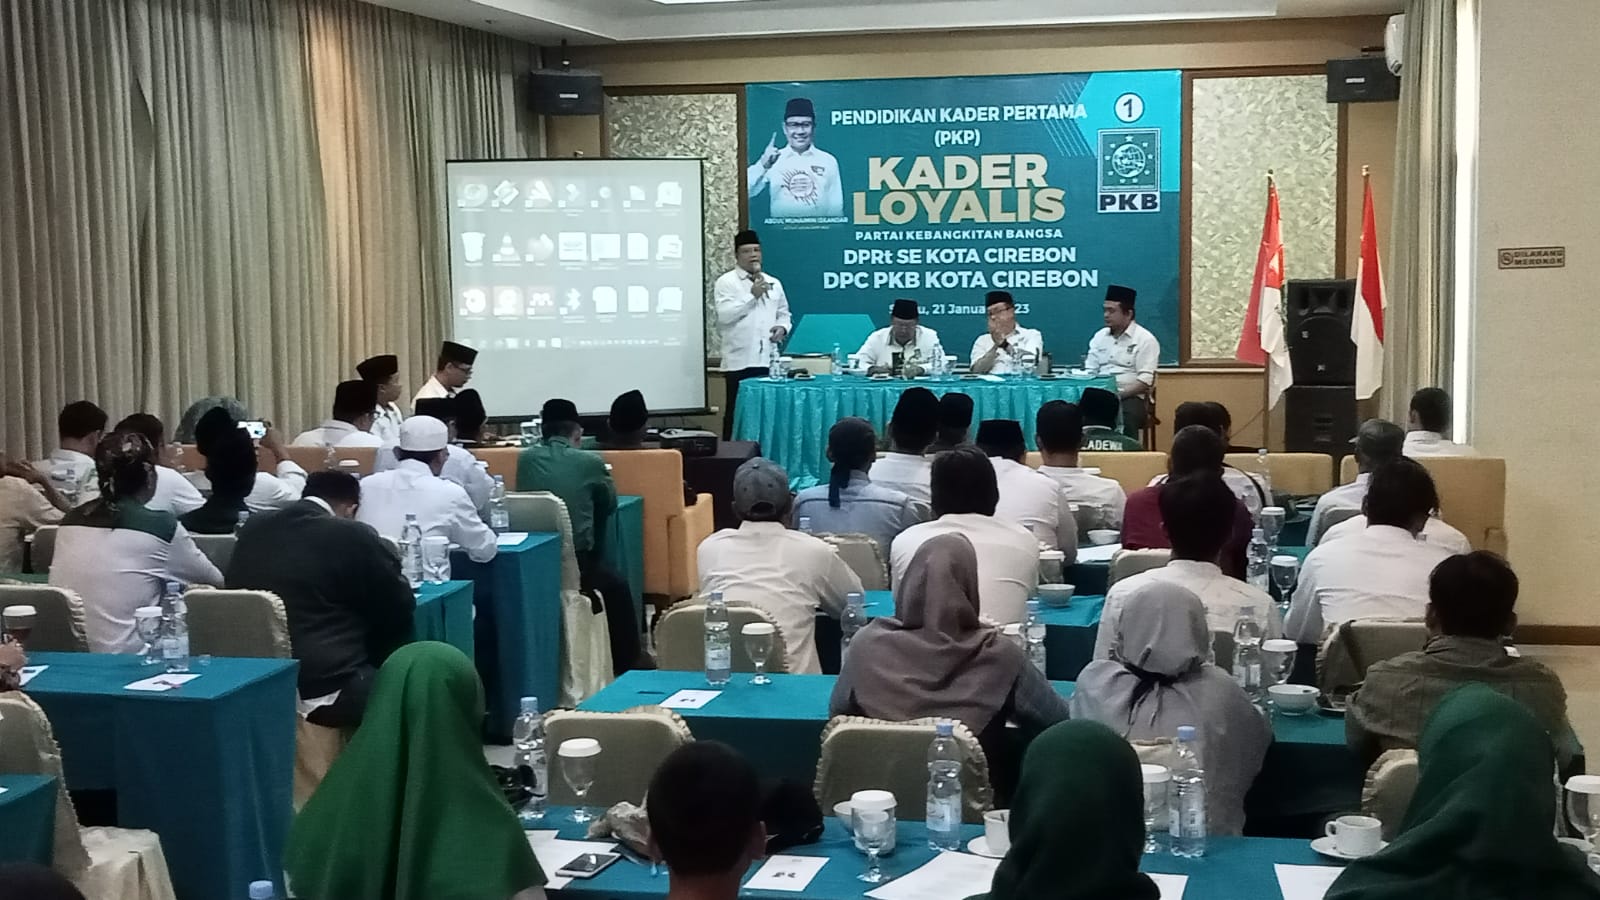 Pendidikan Kader PKB Kota Cirebon, Menyongsong Pemilu 2024